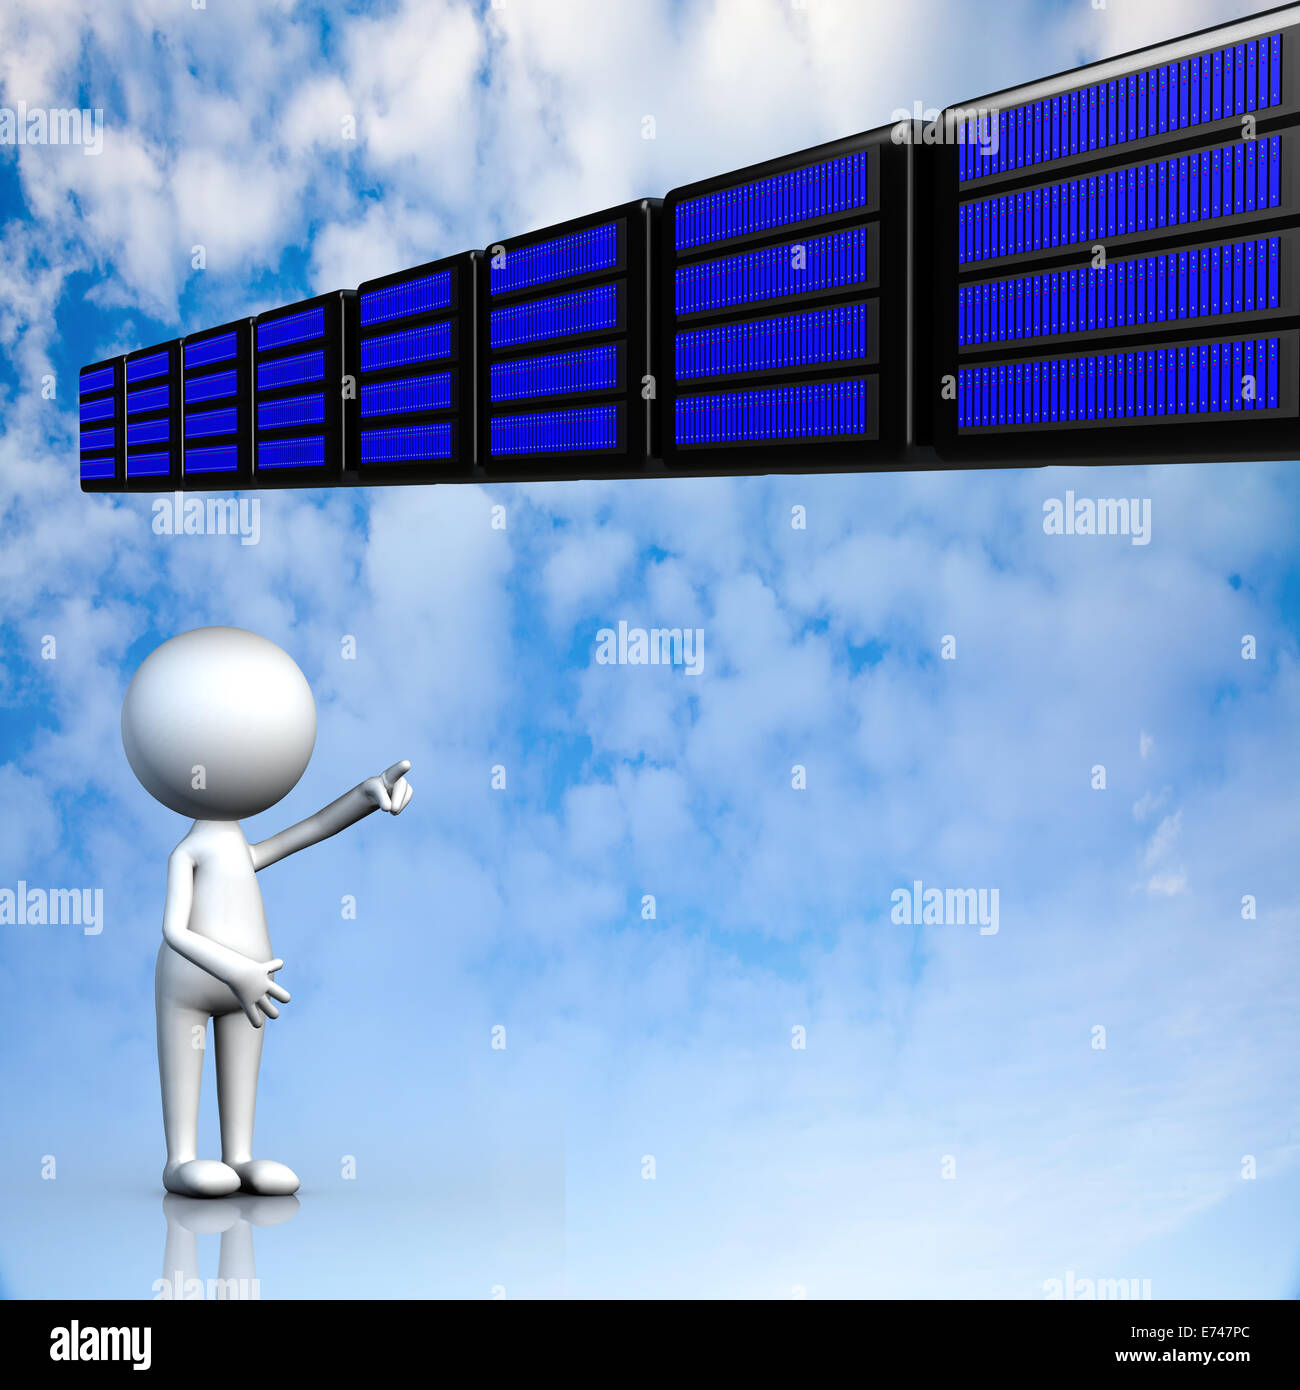 Cloud-computing, Konnektivität Technologiekonzept für Adv oder anderen Zweck Verwendung Stockfoto